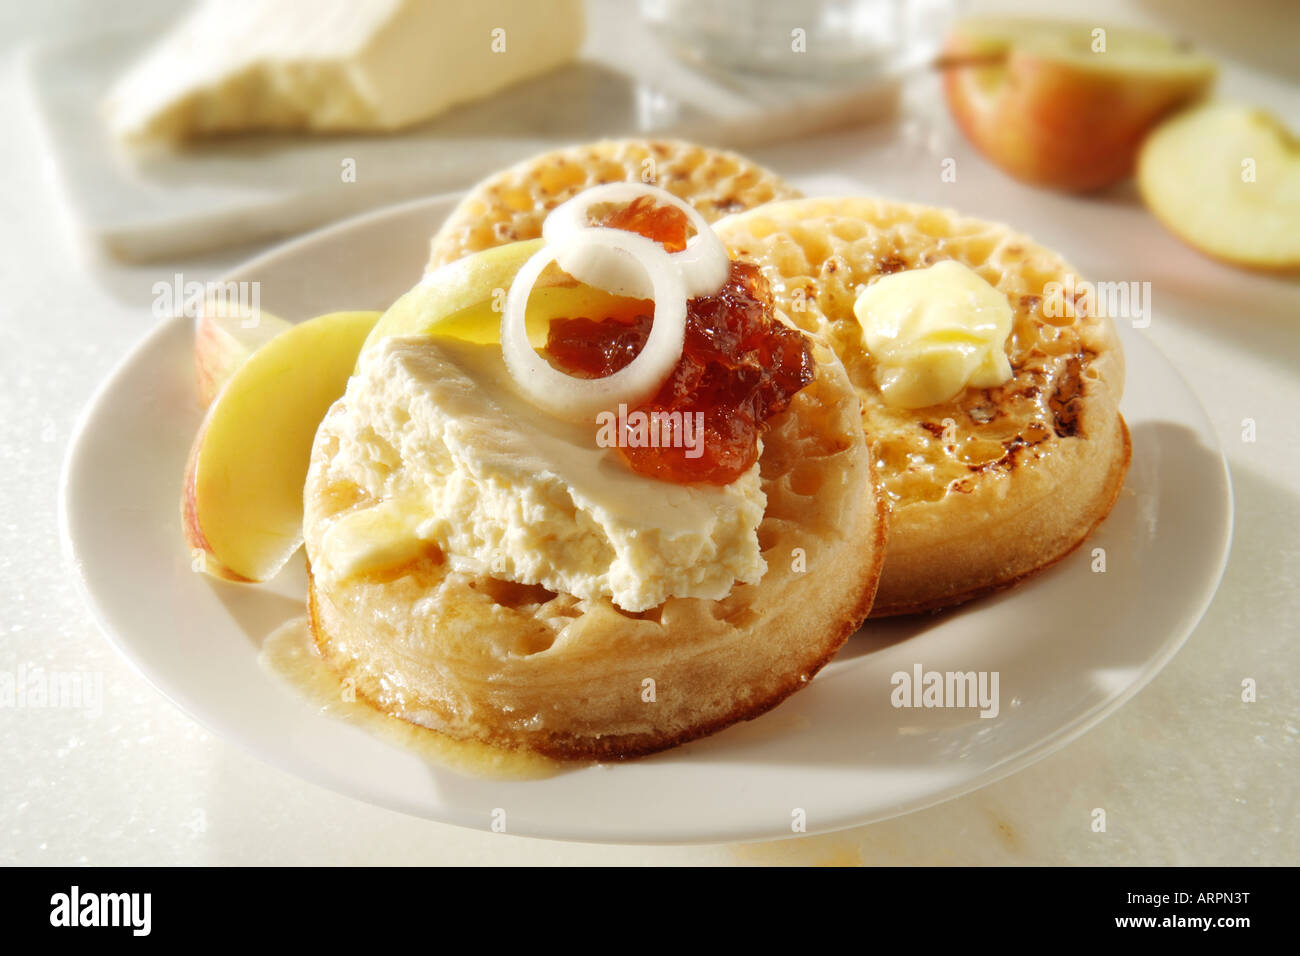 Servire caldo cialdine imburrato con formaggio Wensleydale e cipolla pickle su una piastra bianca in una tabella Foto Stock